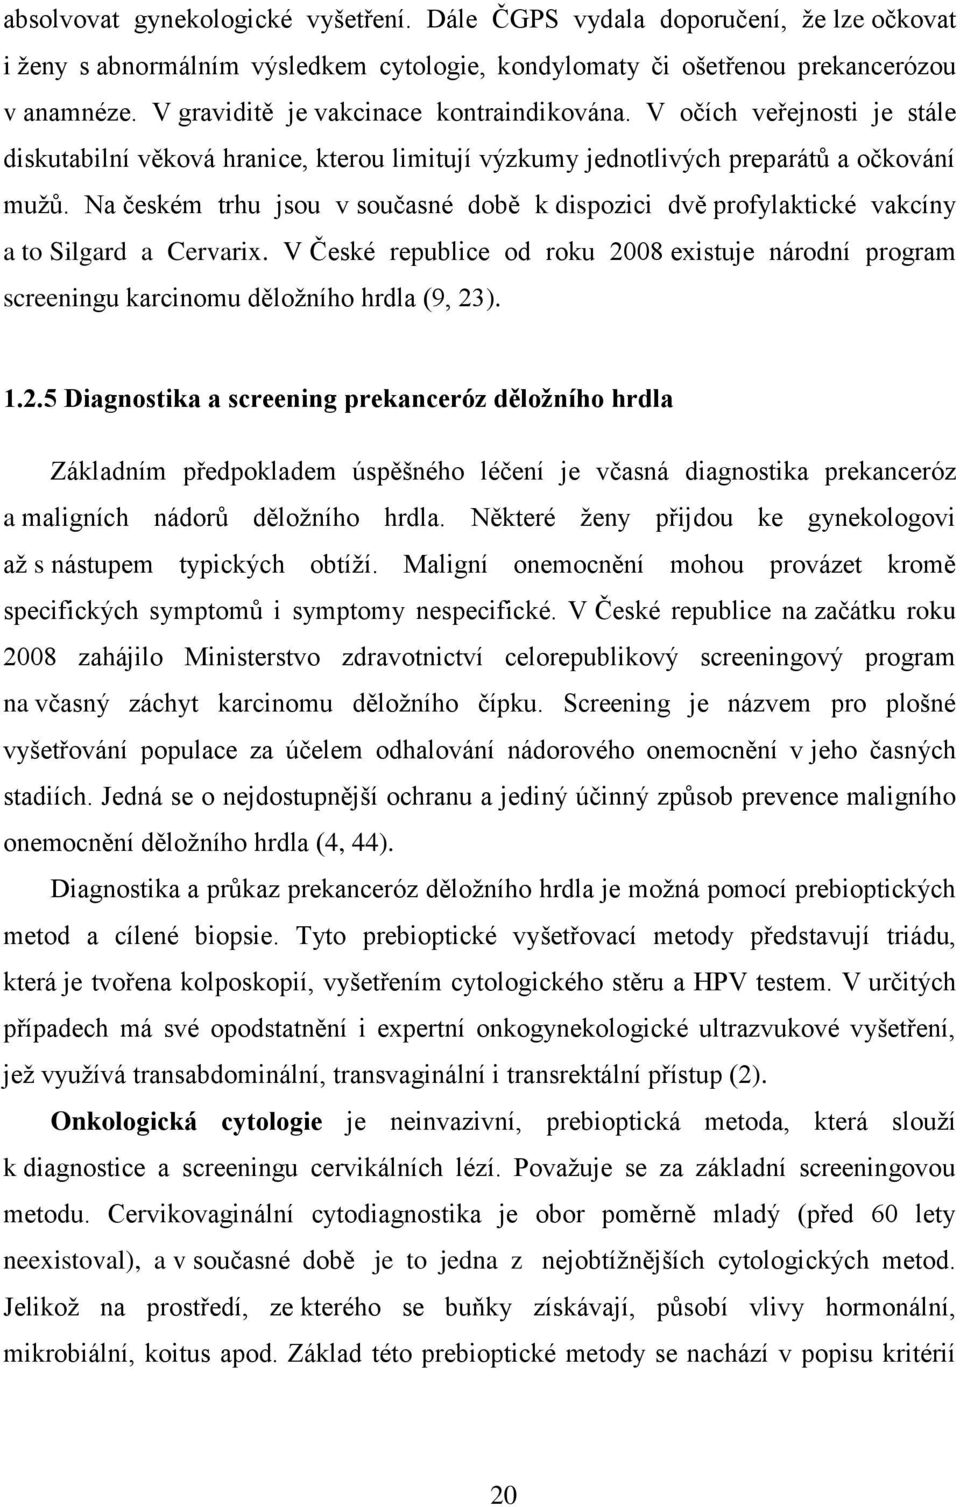 Na českém trhu jsou v současné době k dispozici dvě profylaktické vakcíny a to Silgard a Cervarix. V České republice od roku 2008 existuje národní program screeningu karcinomu děložního hrdla (9, 23).